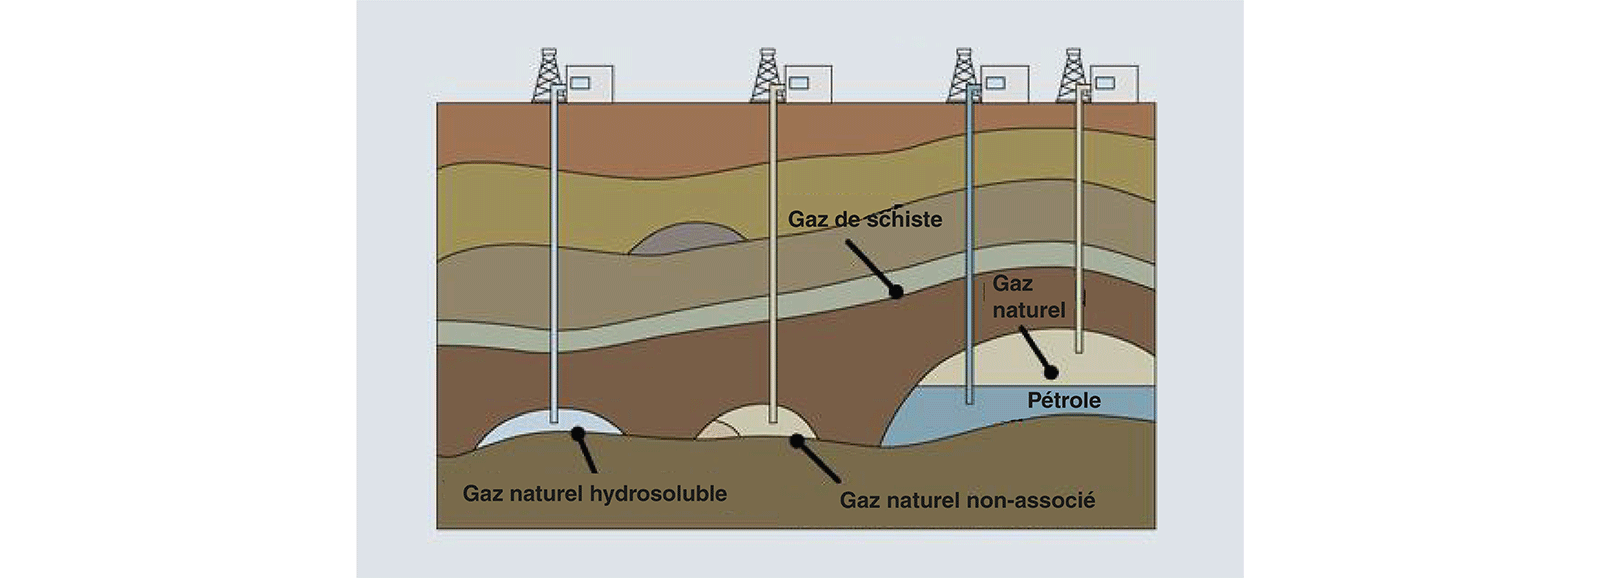 Extraction de gaz naturel conventionnel